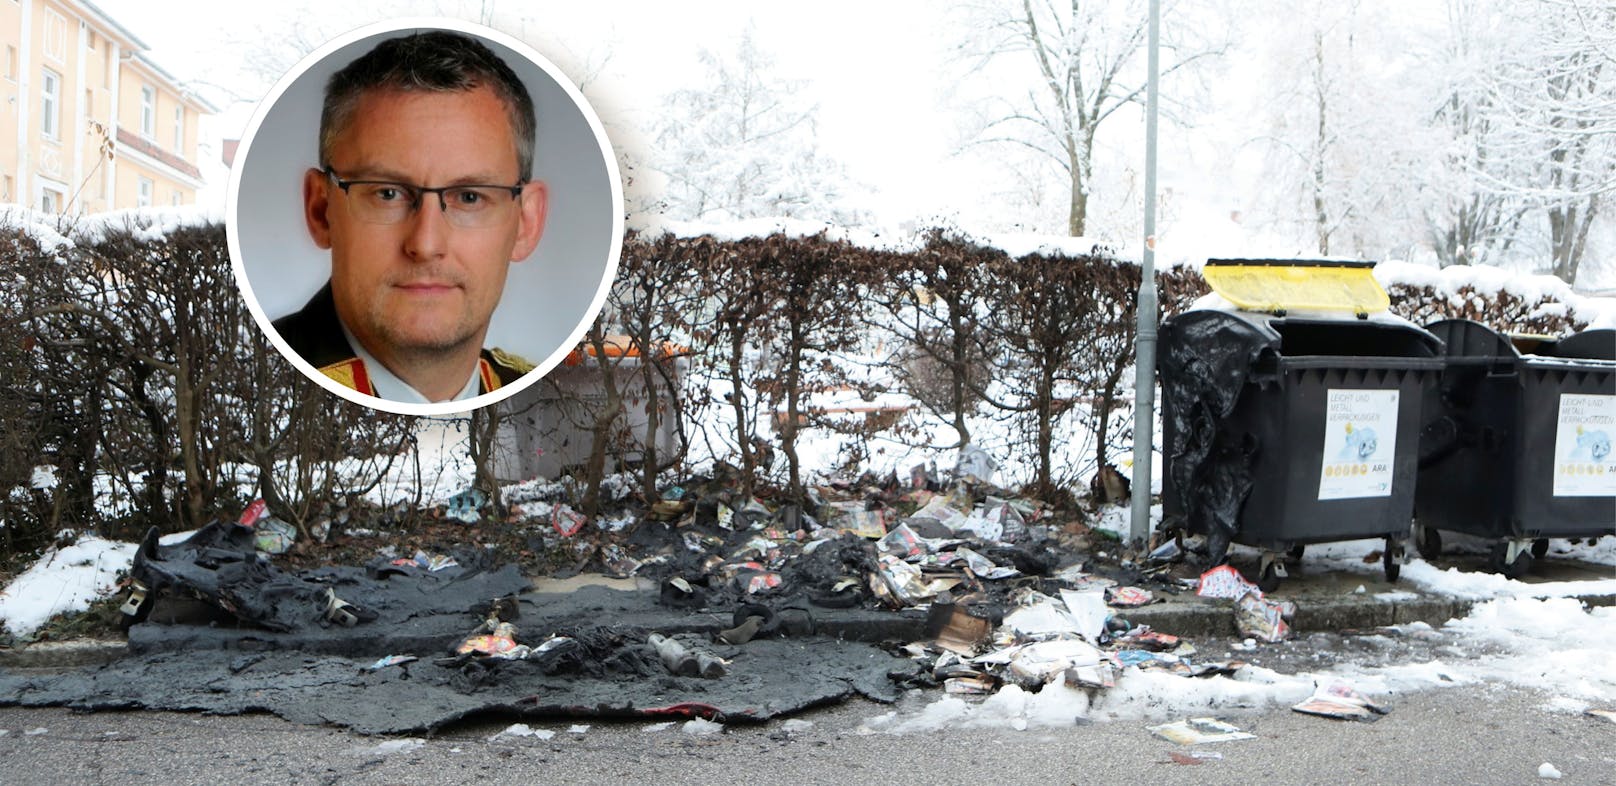 Bezirksfeuerwehrkommandant Gerhard Praxmarer geht von Brandstiftung aus. Die Müllcontainer brannten nämlich kurz nacheinander.